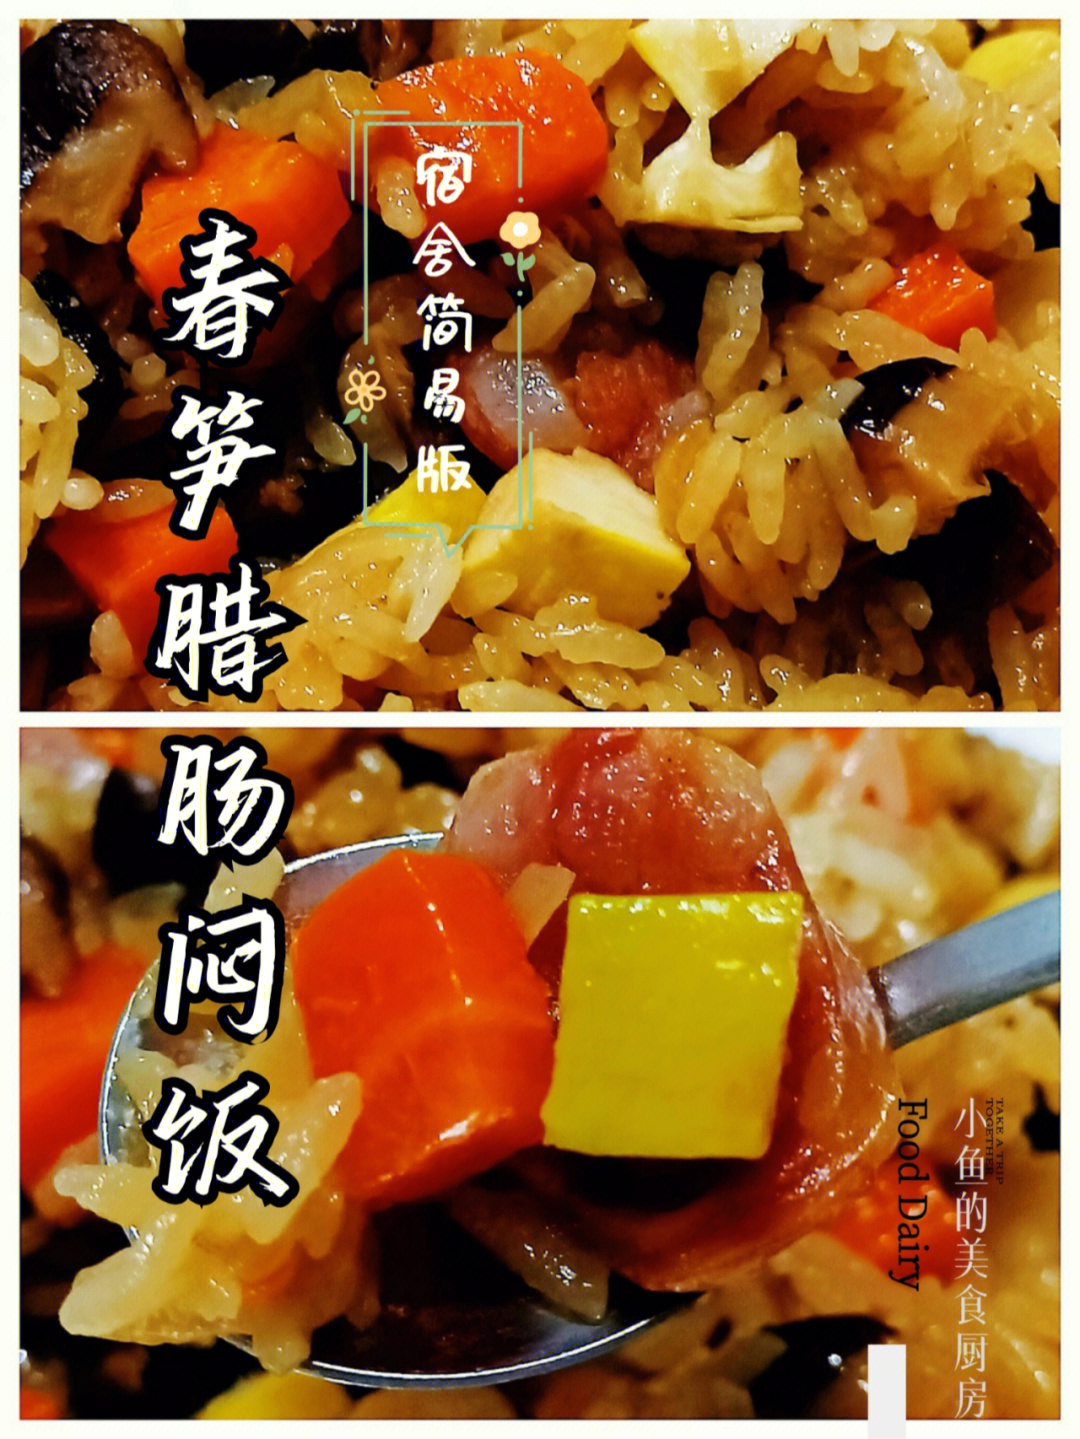 一人食小电锅菜谱图片